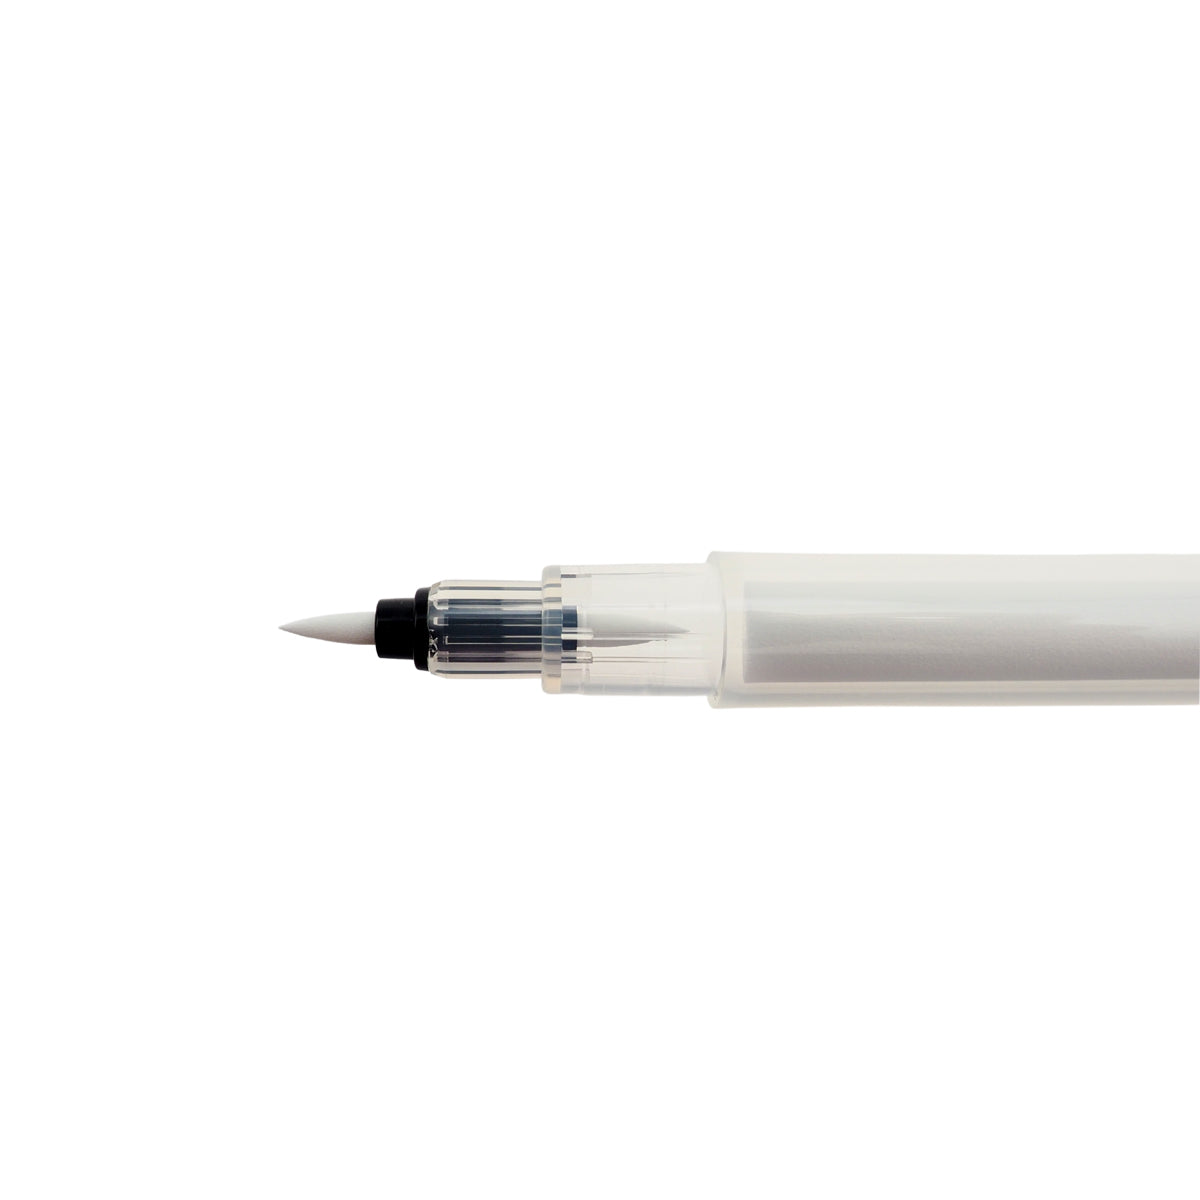 Kakimori Brush pen